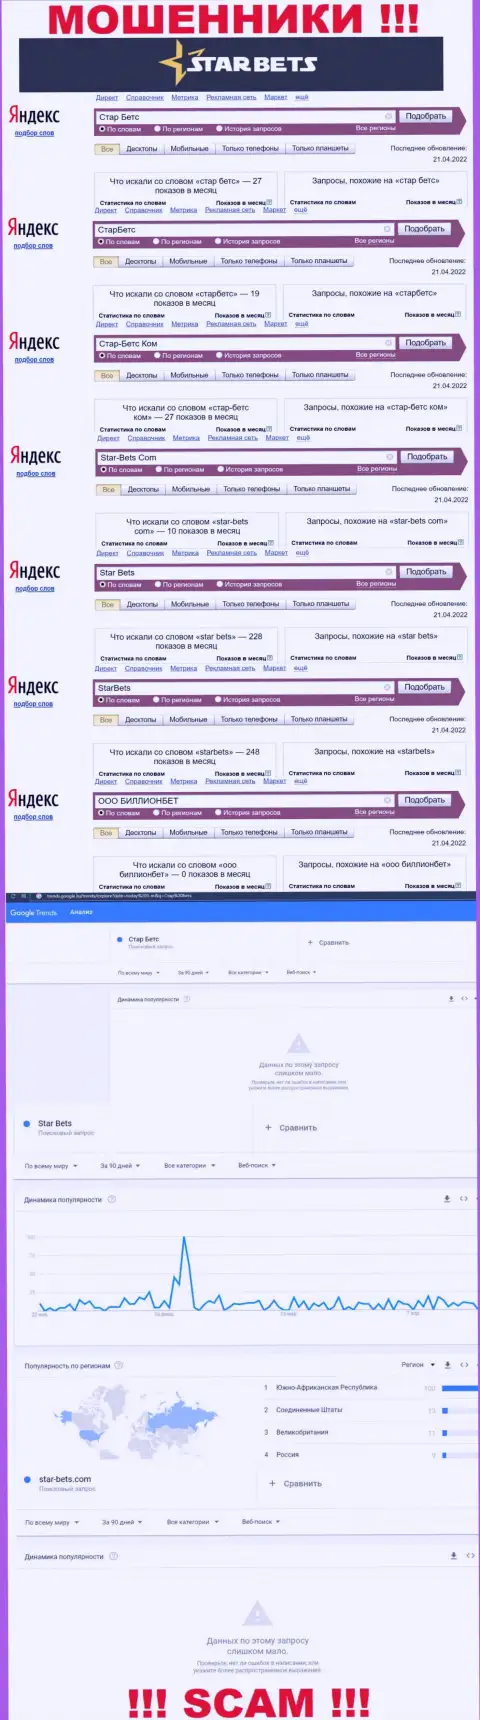 Скрин результатов online-запросов по противоправно действующей организации StarBets